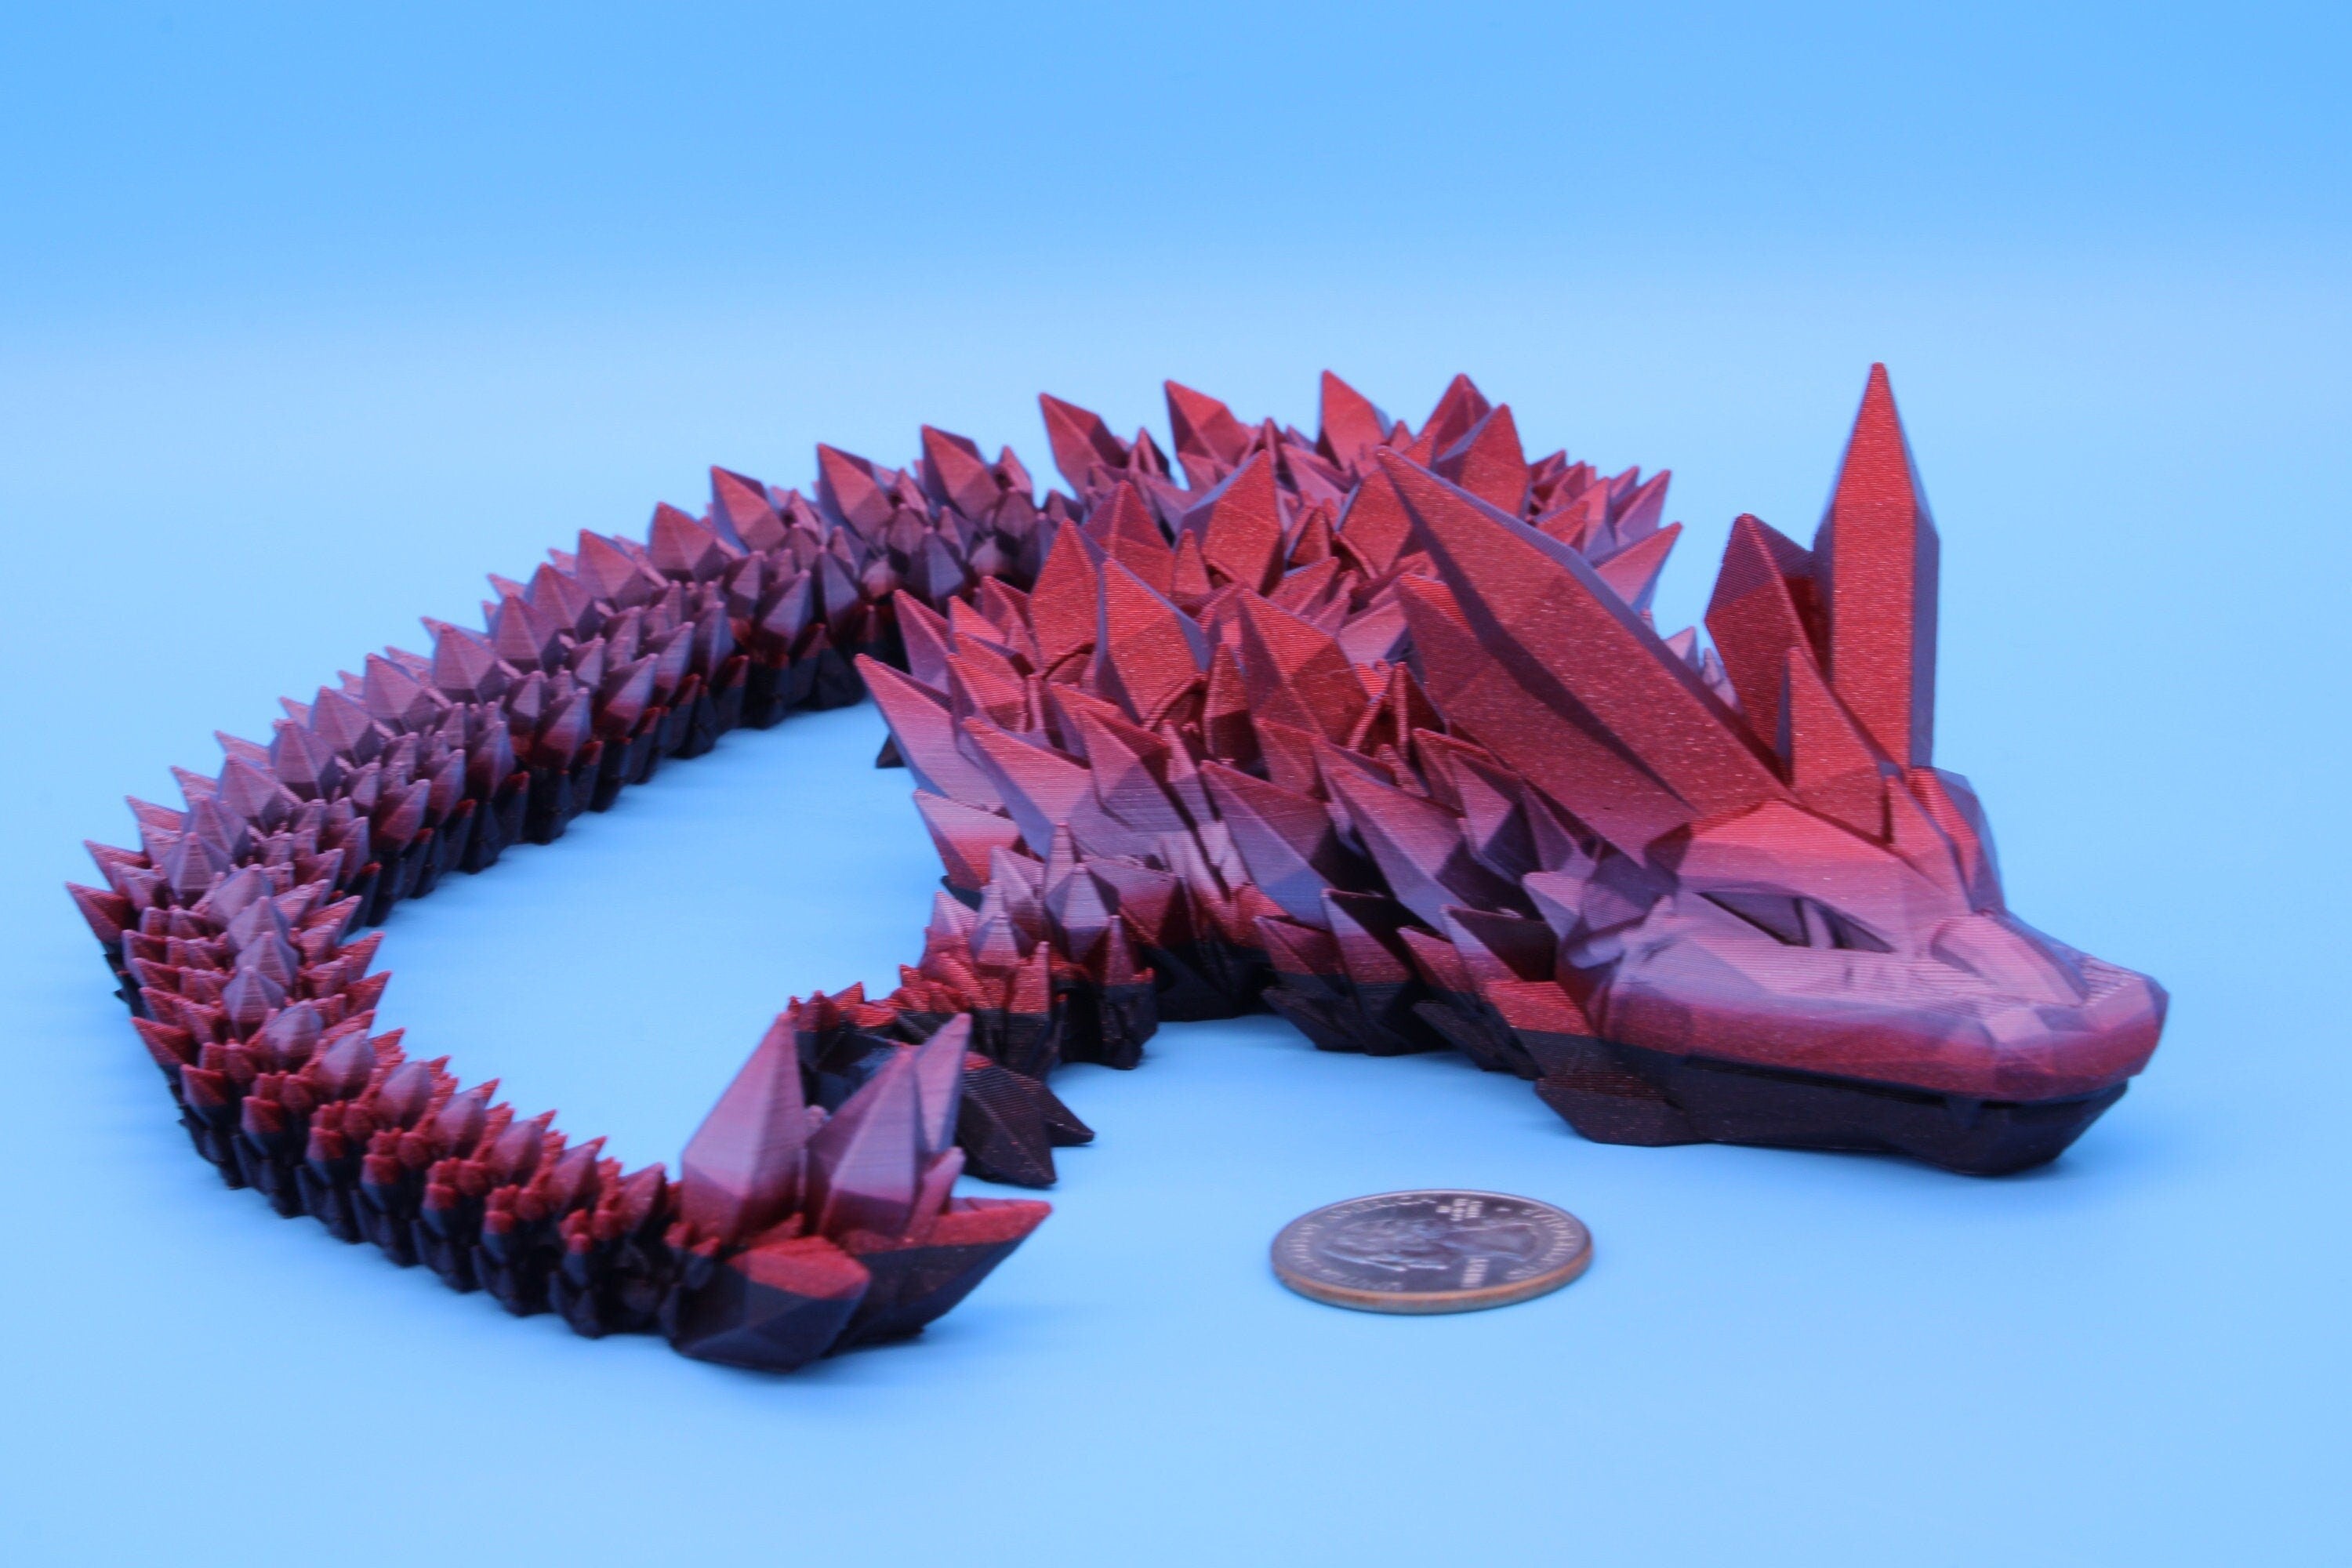 Rainbow Pink & Dark Crystal Dragon | 3D Printed Articulating Dragon | Flexi Toy | Adult Fidget Toy | Dragon Buddy ready for you! 24 inch.